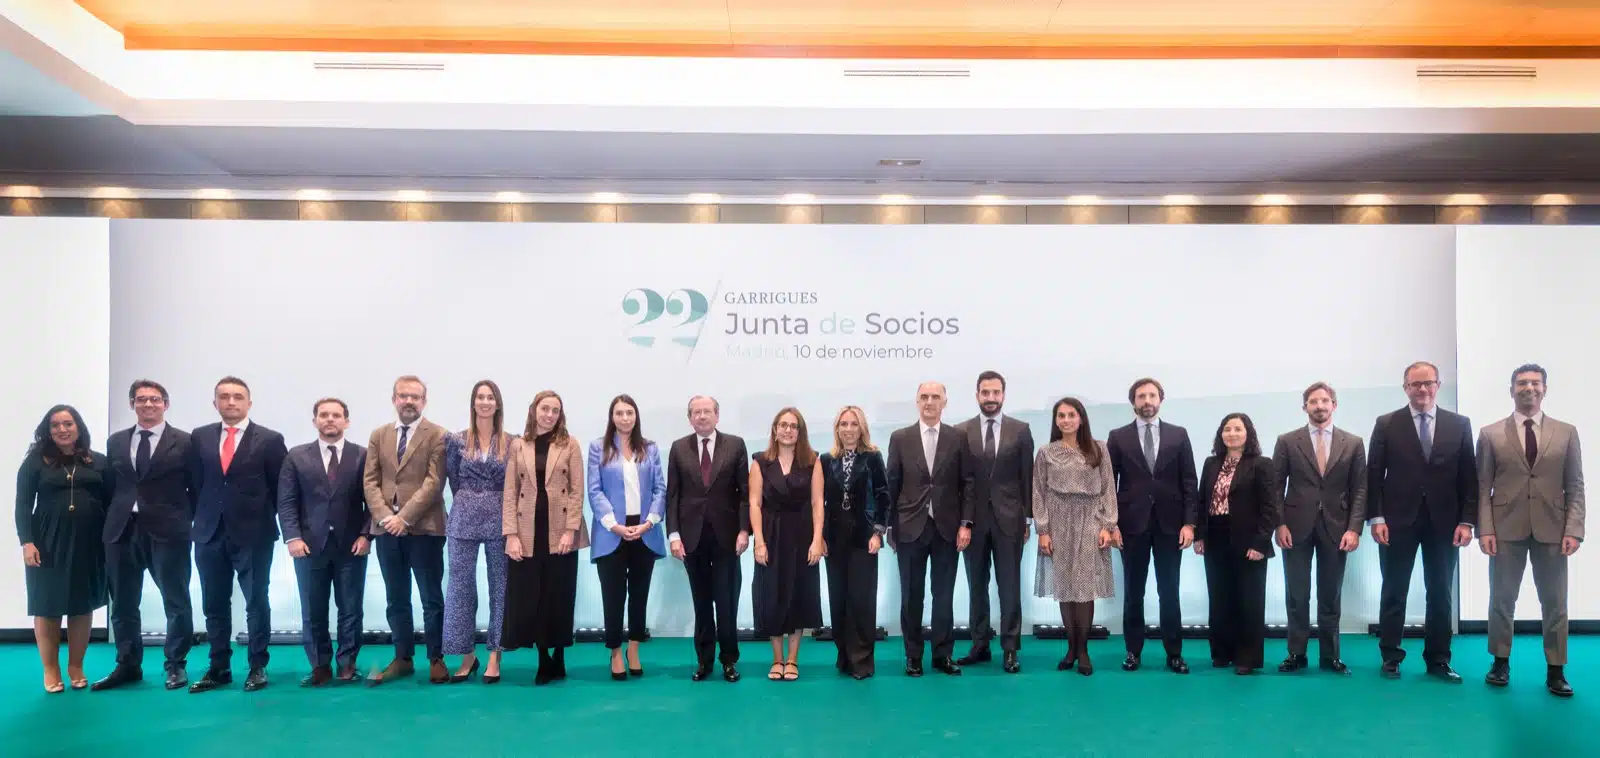 Garrigues aprueba el nombramiento de 16 nuevos socios: la mitad son mujeres